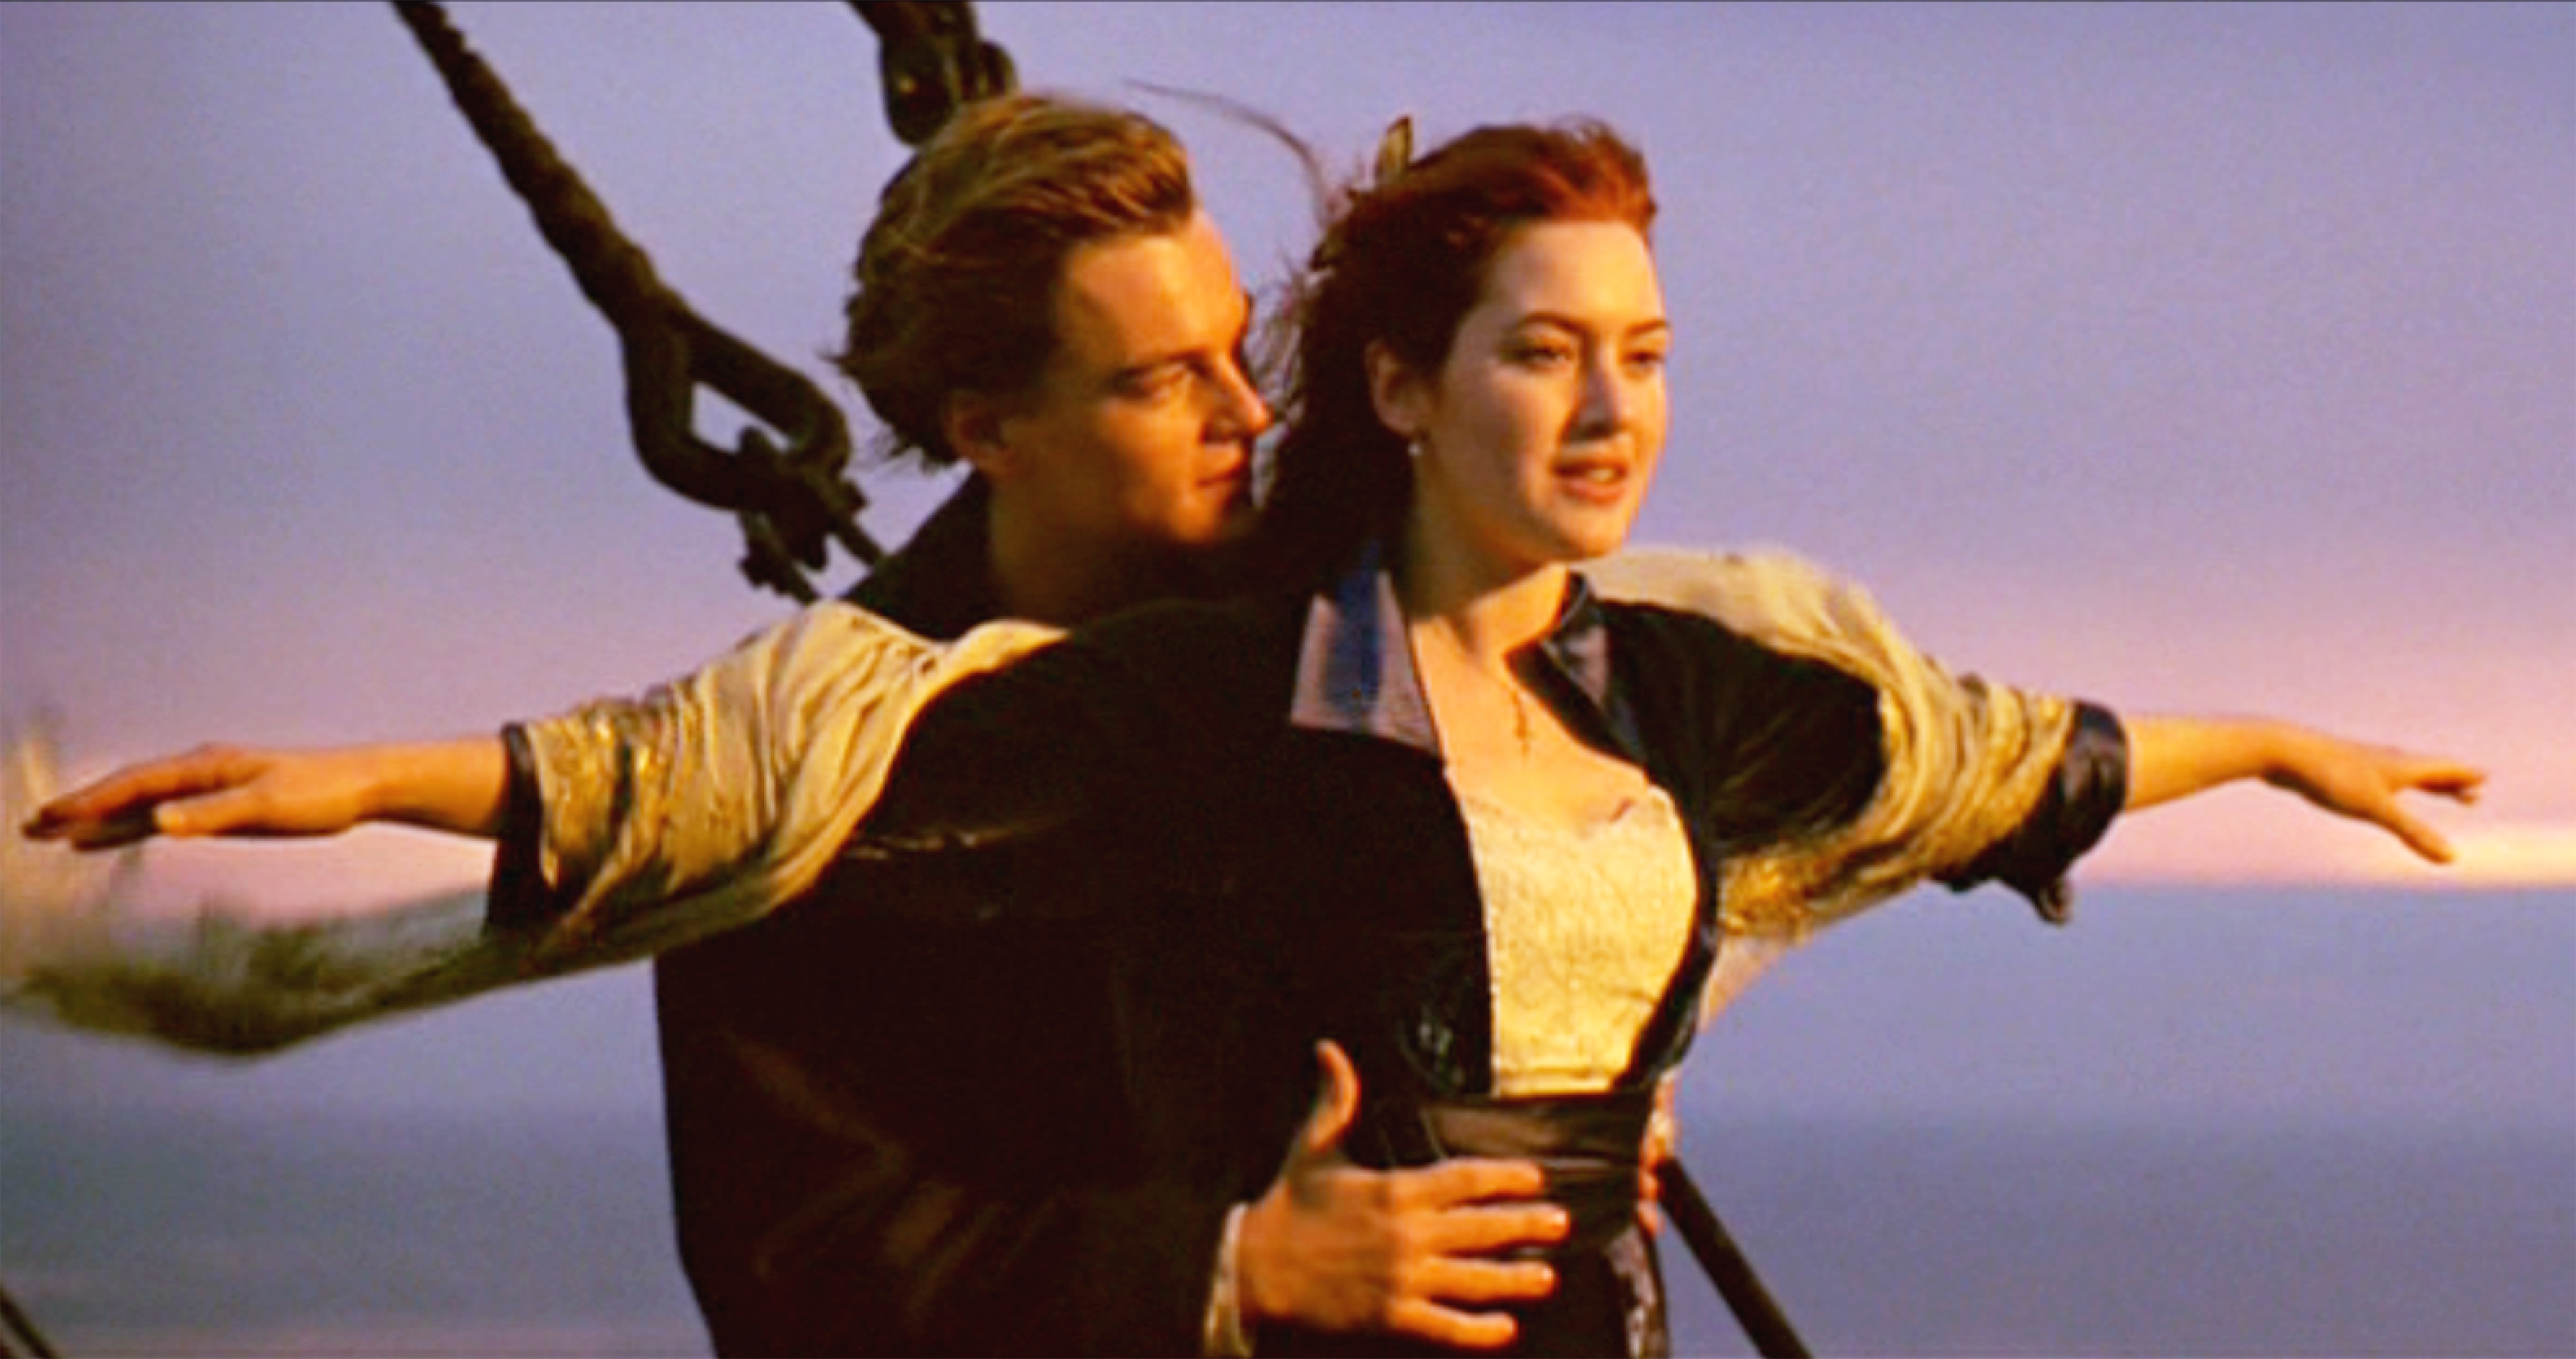 Leonardo DiCaprio dans le rôle de Jack et Kate Winslet dans celui de Rose dans le film "Titanic" en 1997 | Source : Getty Images